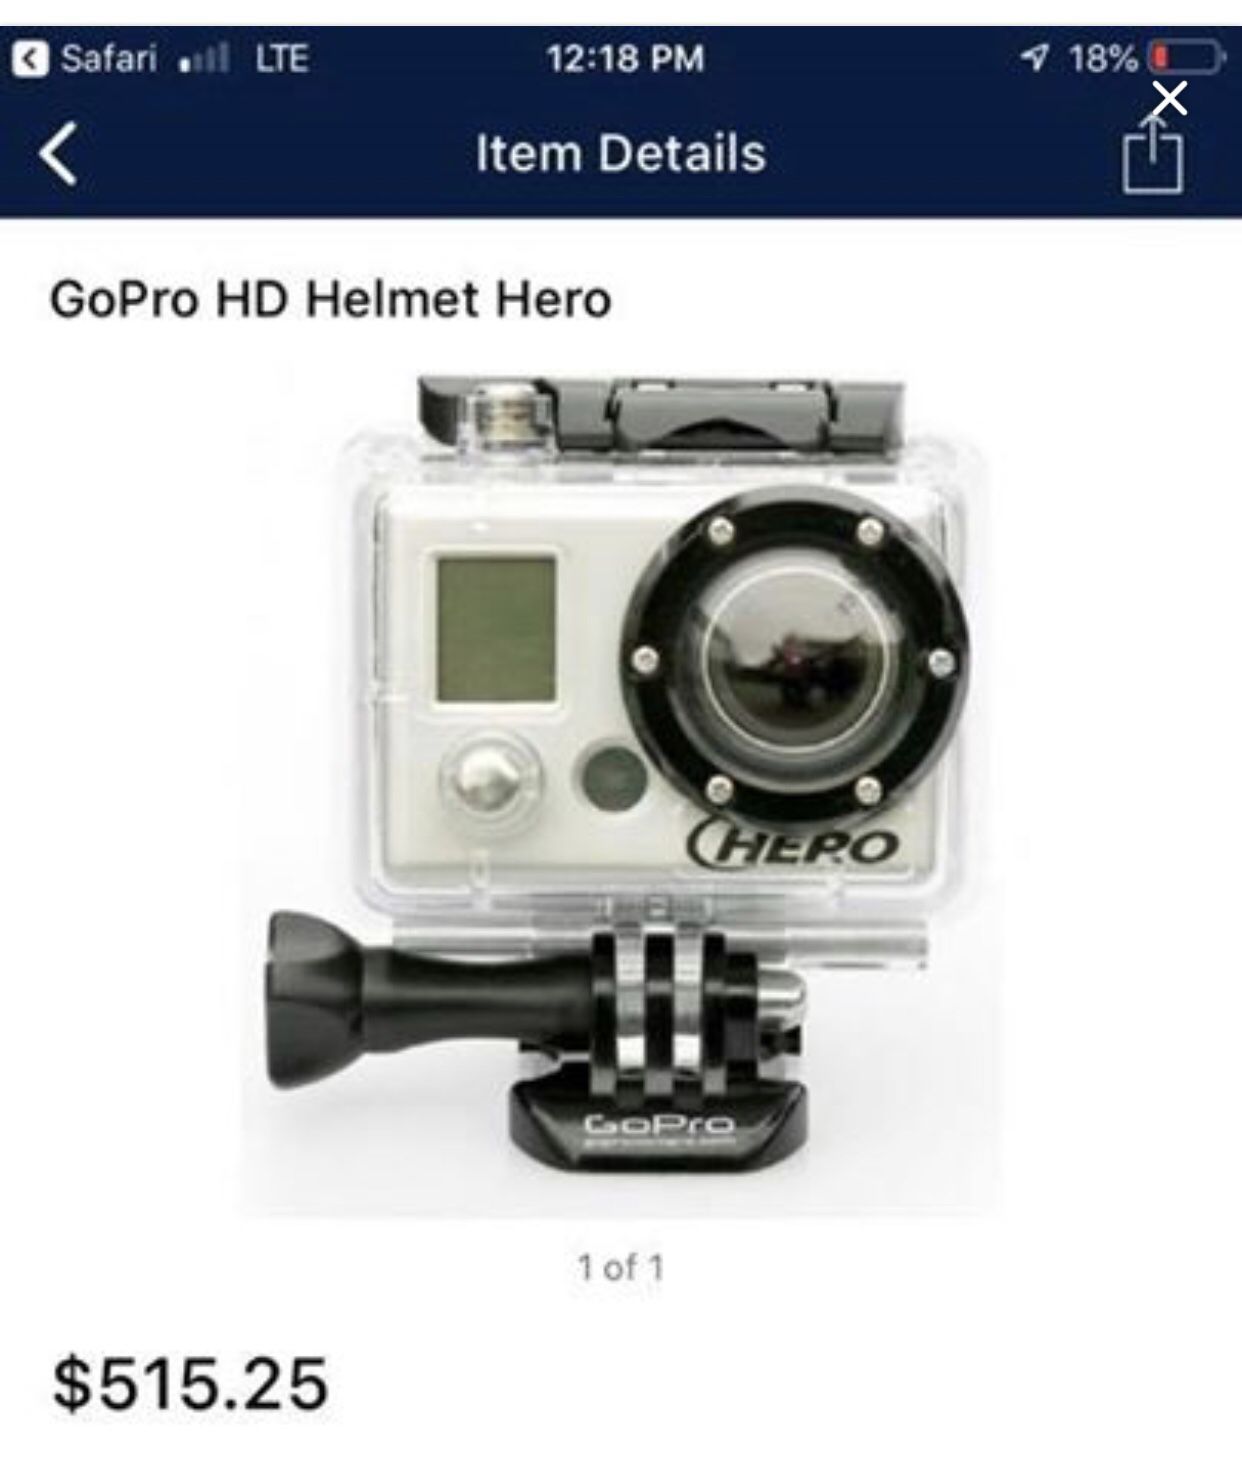 Original HD Helmet Hero GoPro. SD card not included.